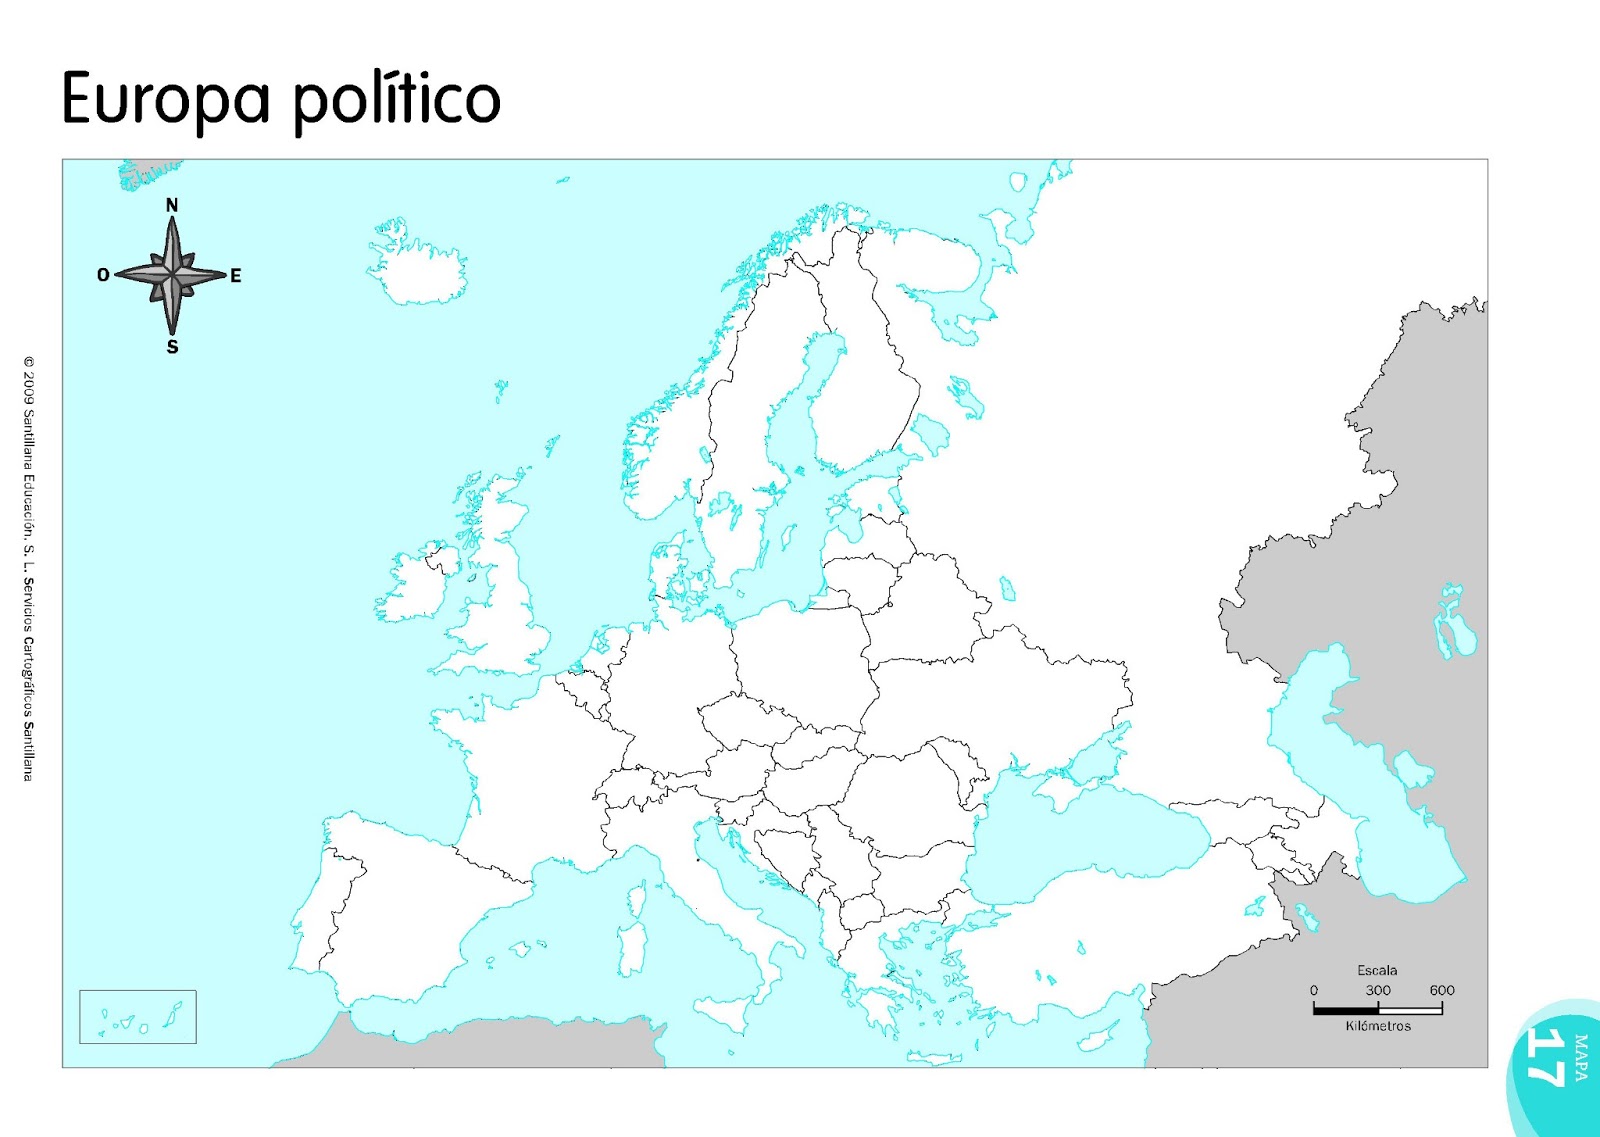 Mapa Mudo Politico Europa Union Europea